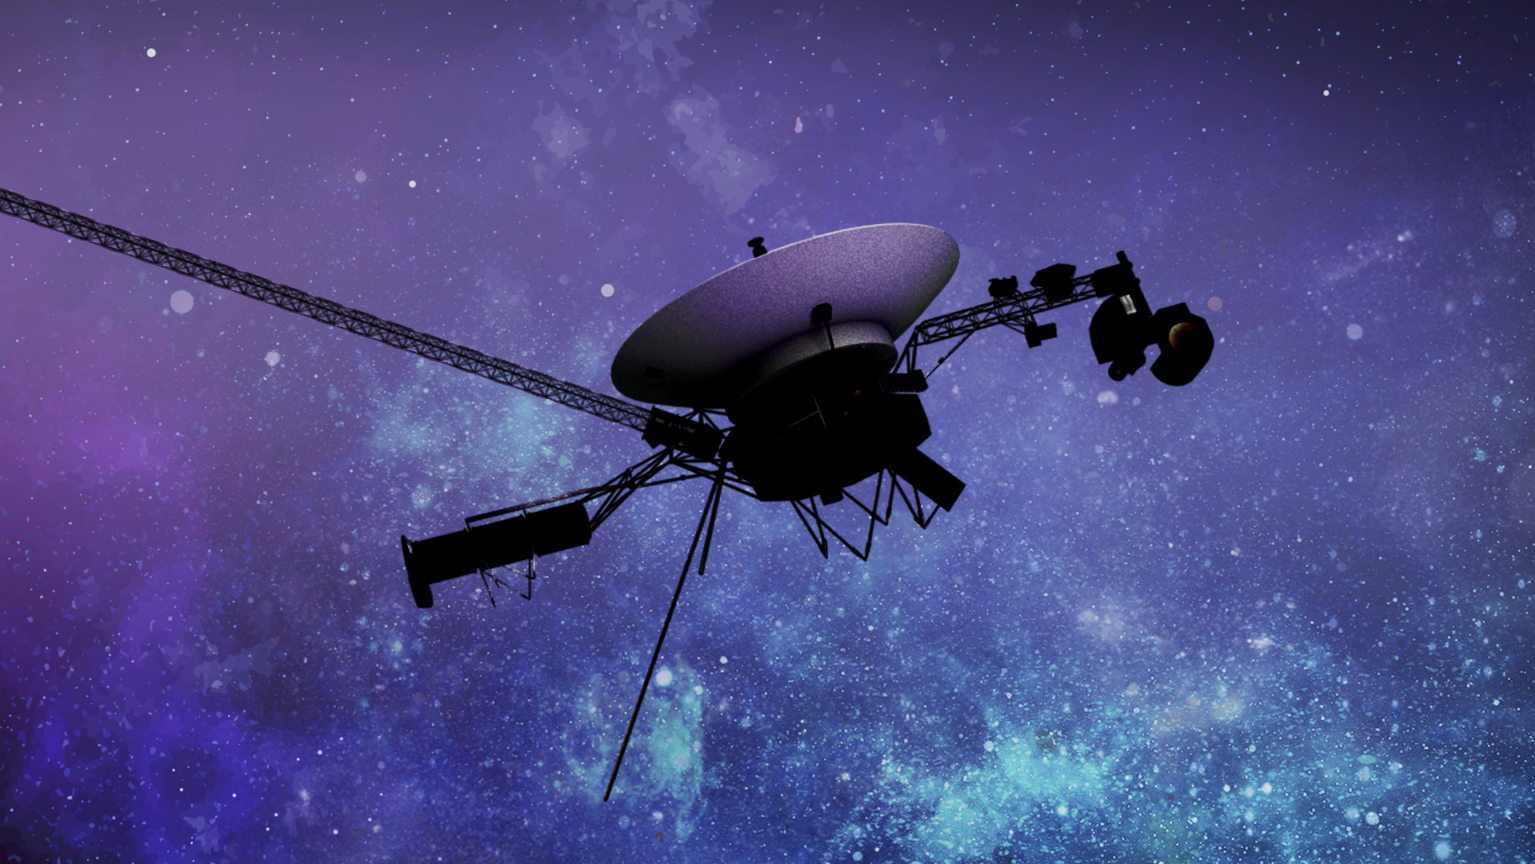 NASA'nın Voyager 1 uzay aracı kısa süreliğine yeniden bağlanarak tarihi görev için umudu canlı tutuyor